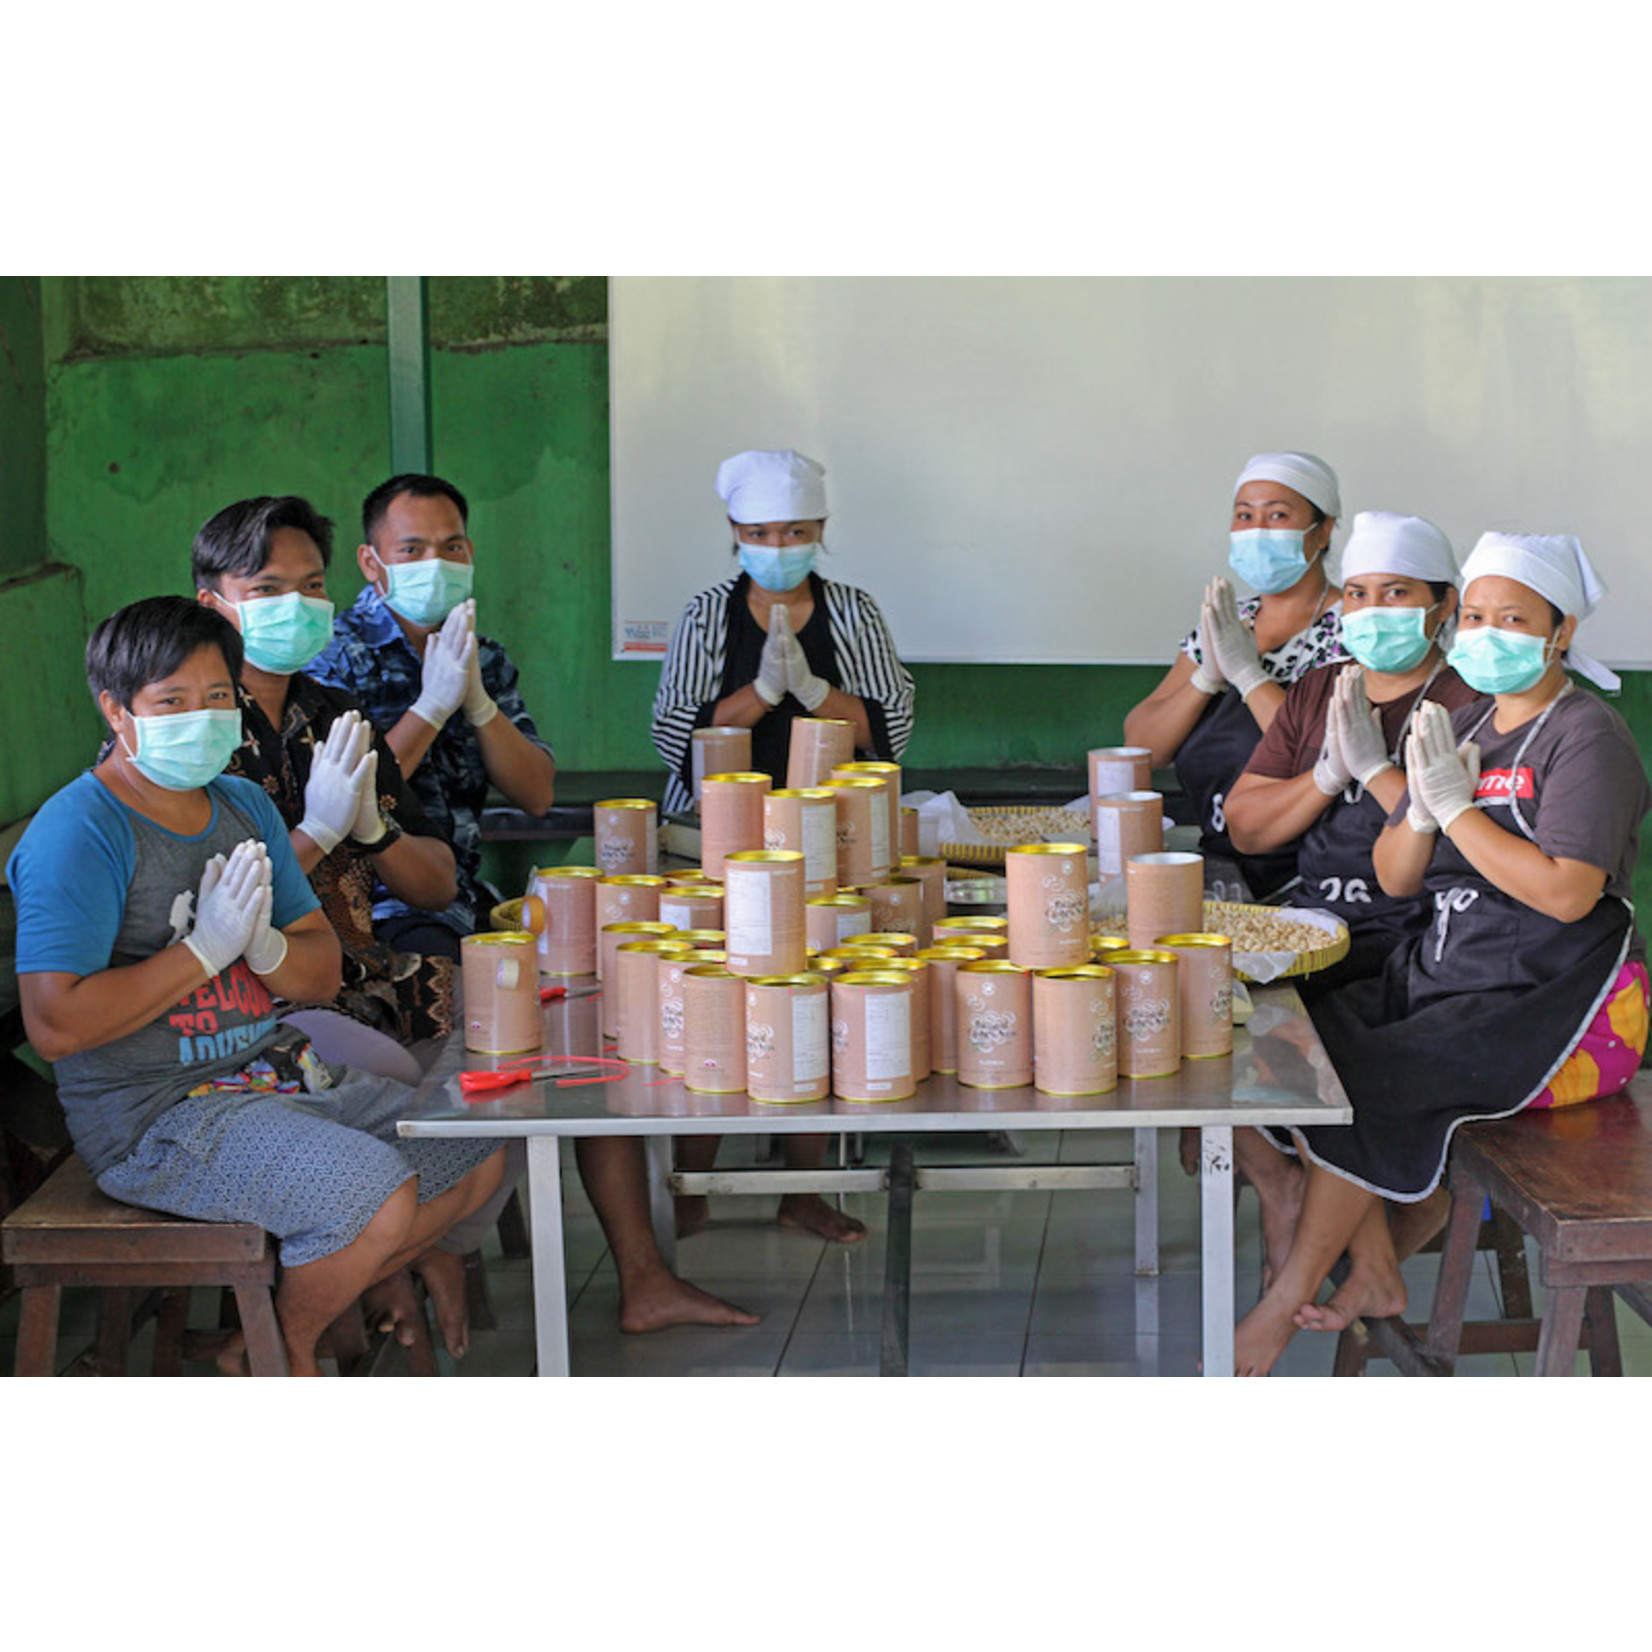 Muntigunung - Zukunft für Kinder Cashew Salt aus Bali 75 gr.